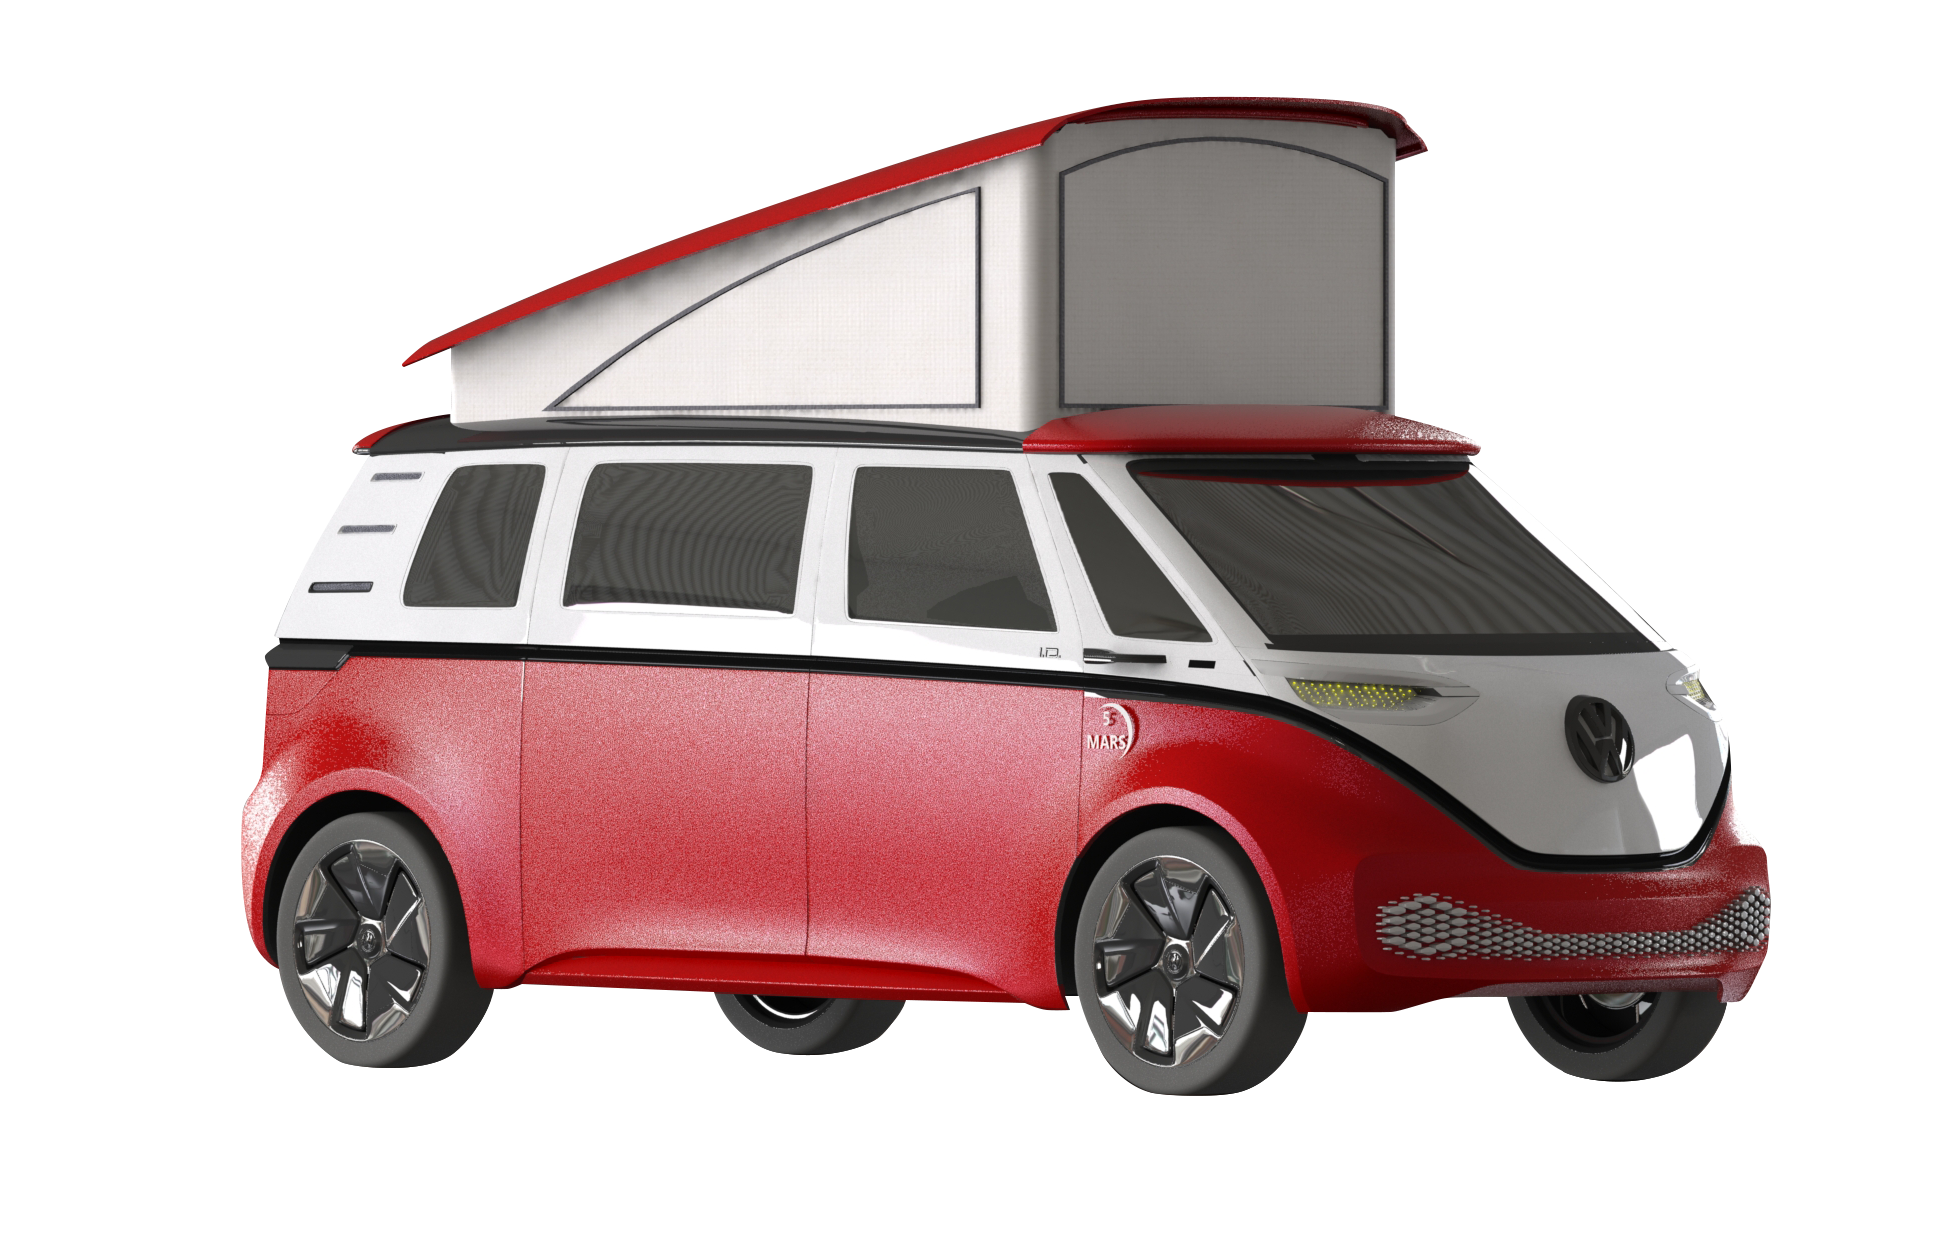 5 Mars RV Imagine camper van with pop-top roof